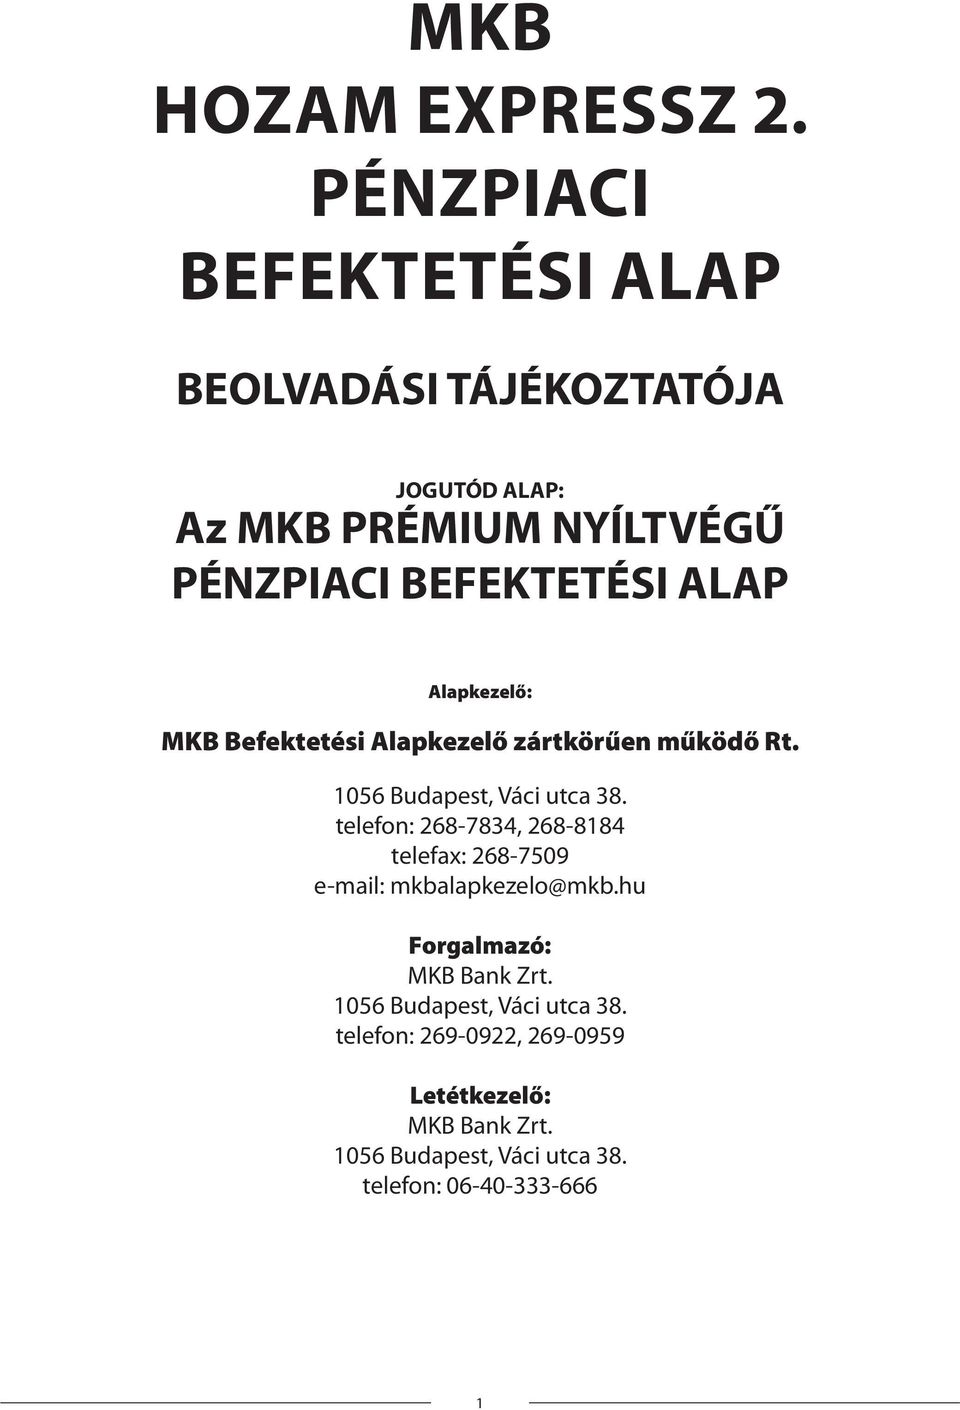 ALAP Alapkezelő: MKB Befektetési Alapkezelő zártkörűen működő Rt. 1056 Budapest, Váci utca 38.